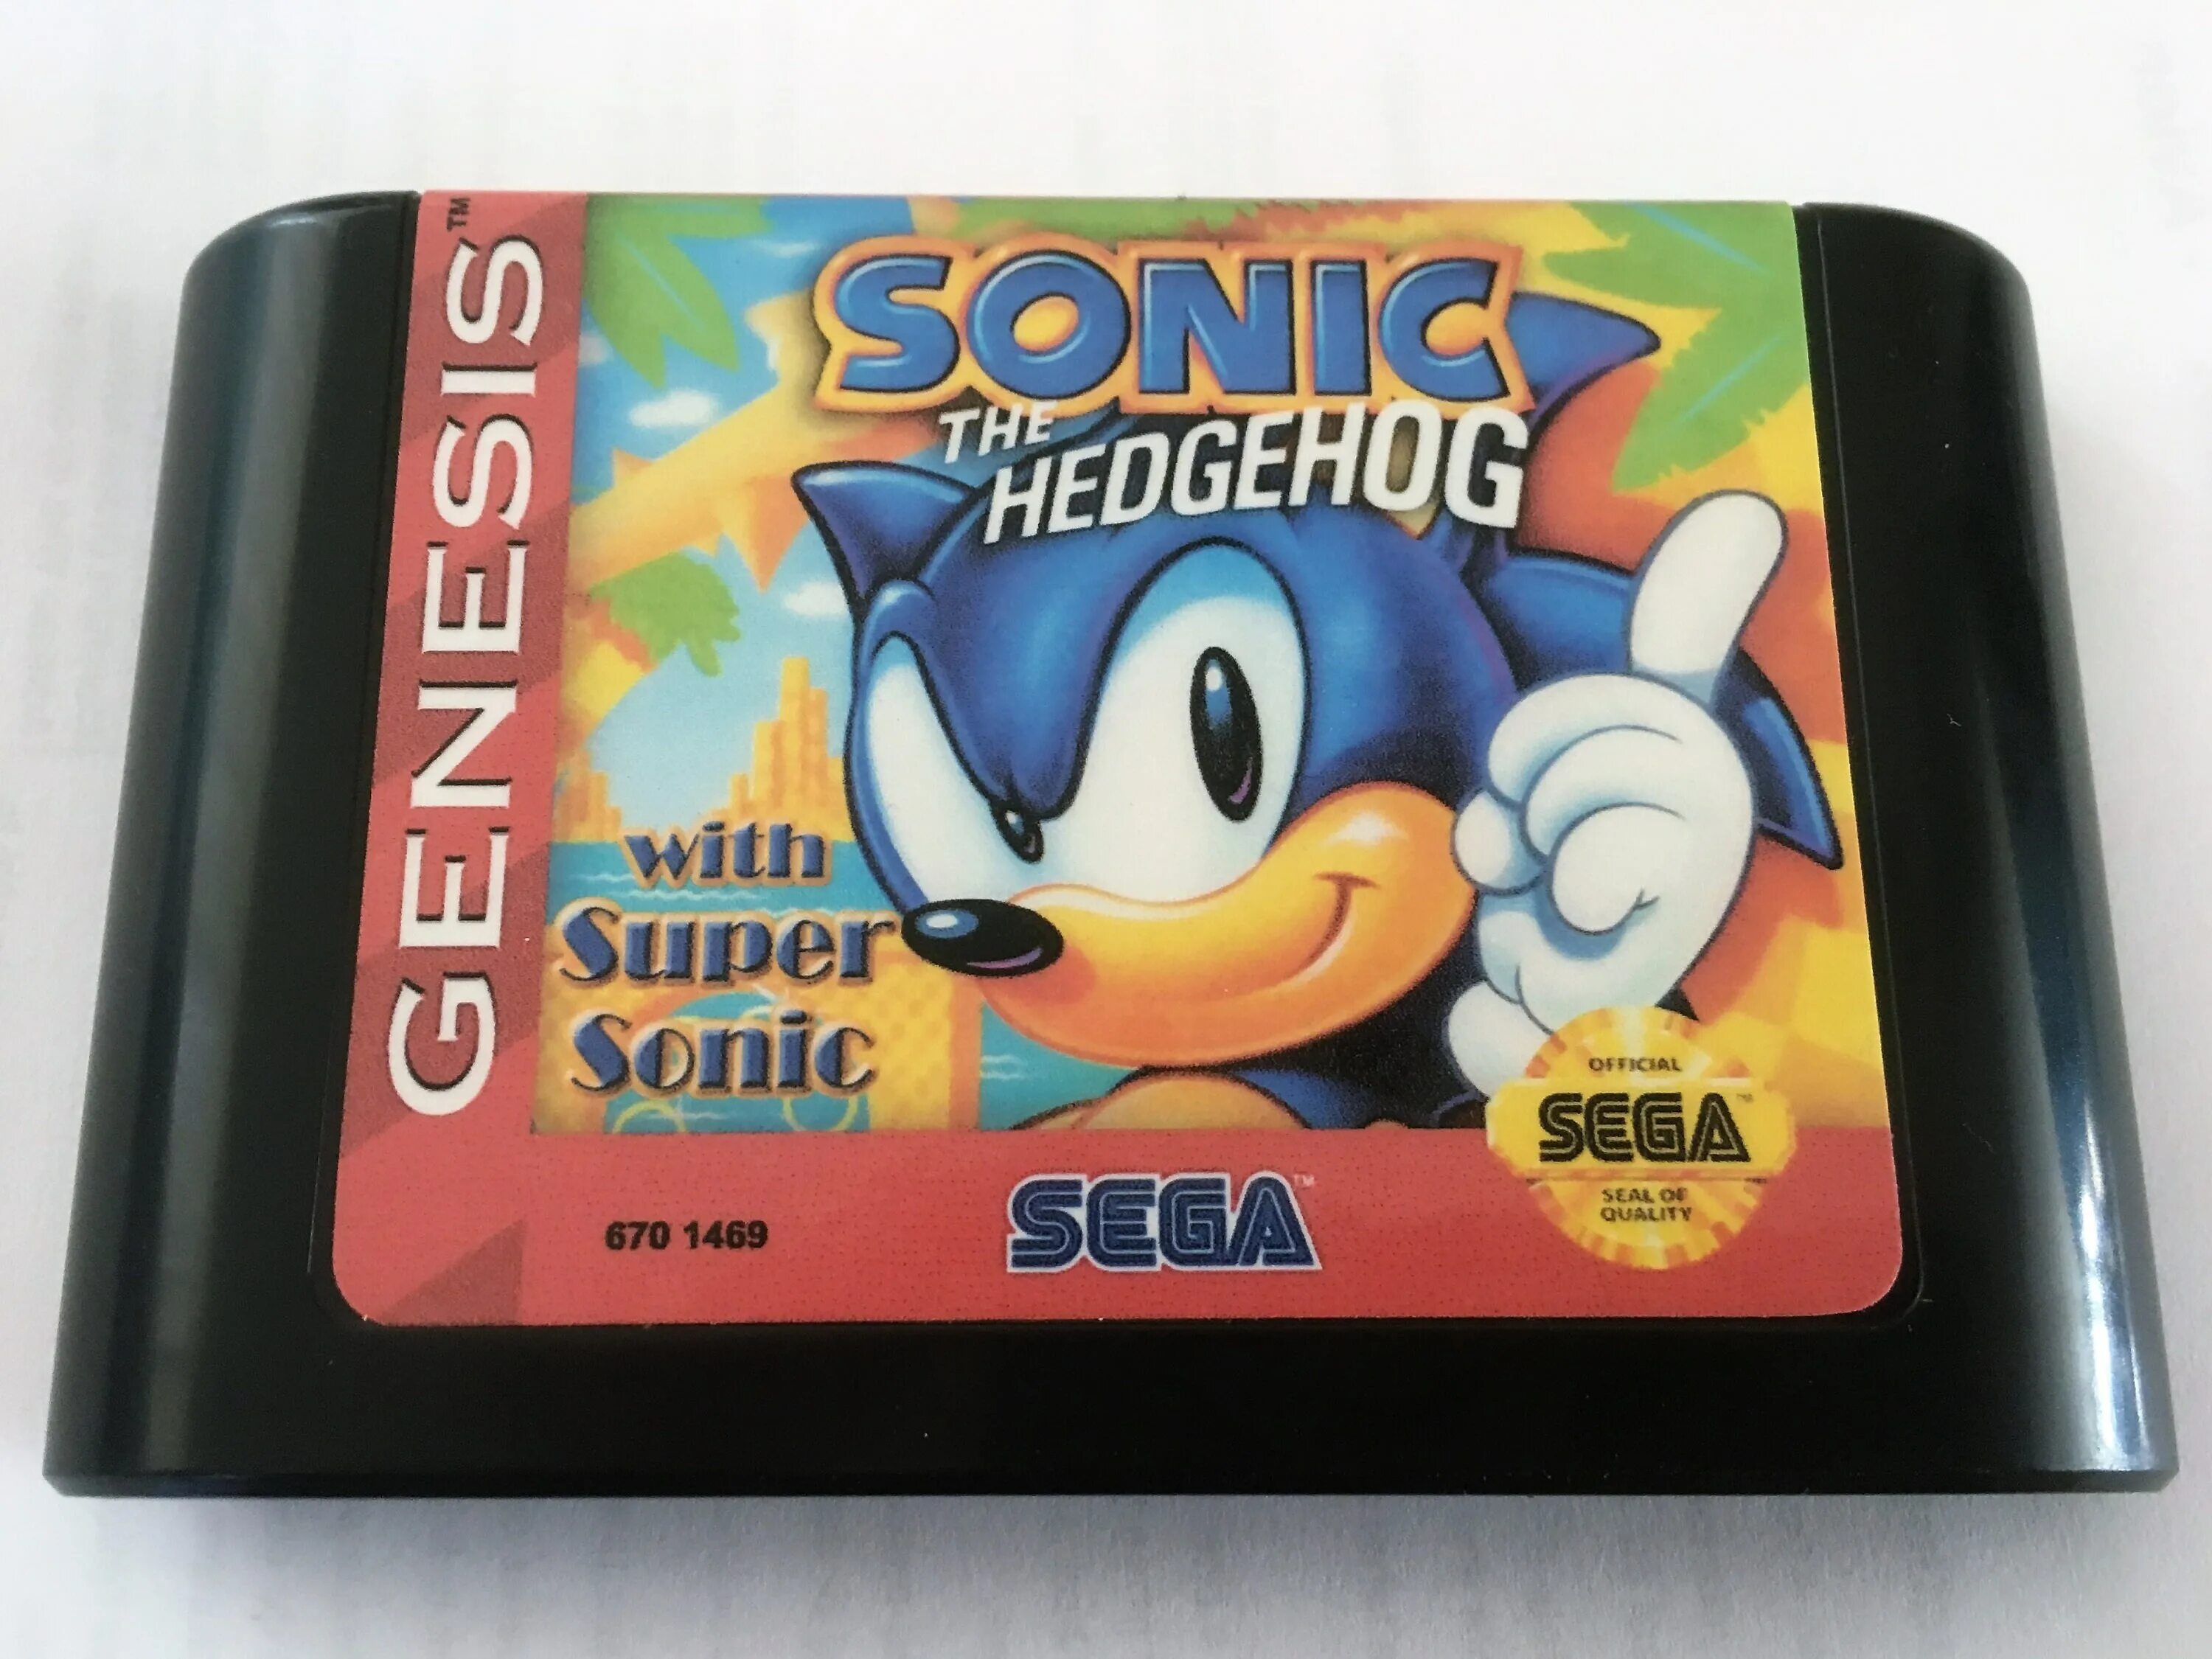 Хаки на сега. Sonic 1 Mega Drive картридж. ROM Sonic Sega Mega Drive. Sega Mega Drive Cartridge Sonic 1. Картридж Sonic the Hedgehog 1 and Sega Mega Drive.